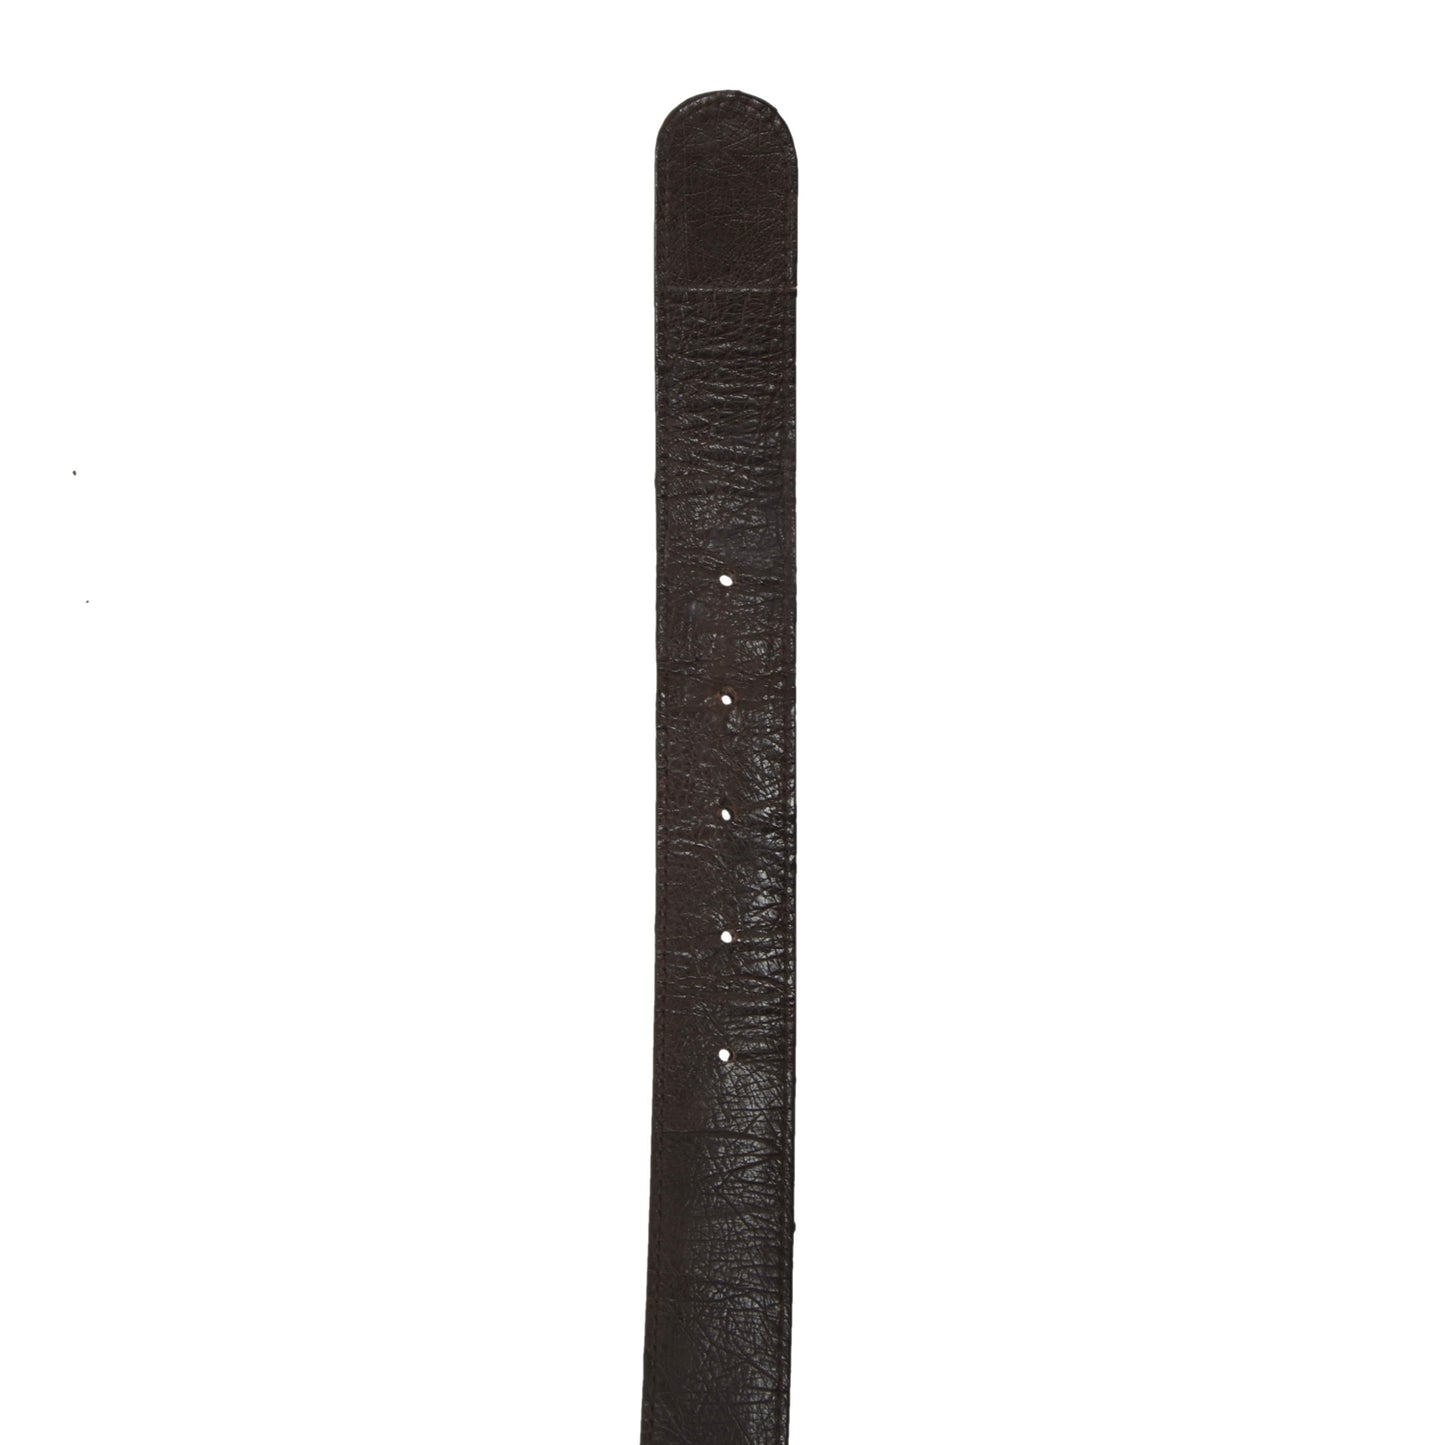 Gürtel aus echtem Straußenleder ca. 113,5 cm - Braun